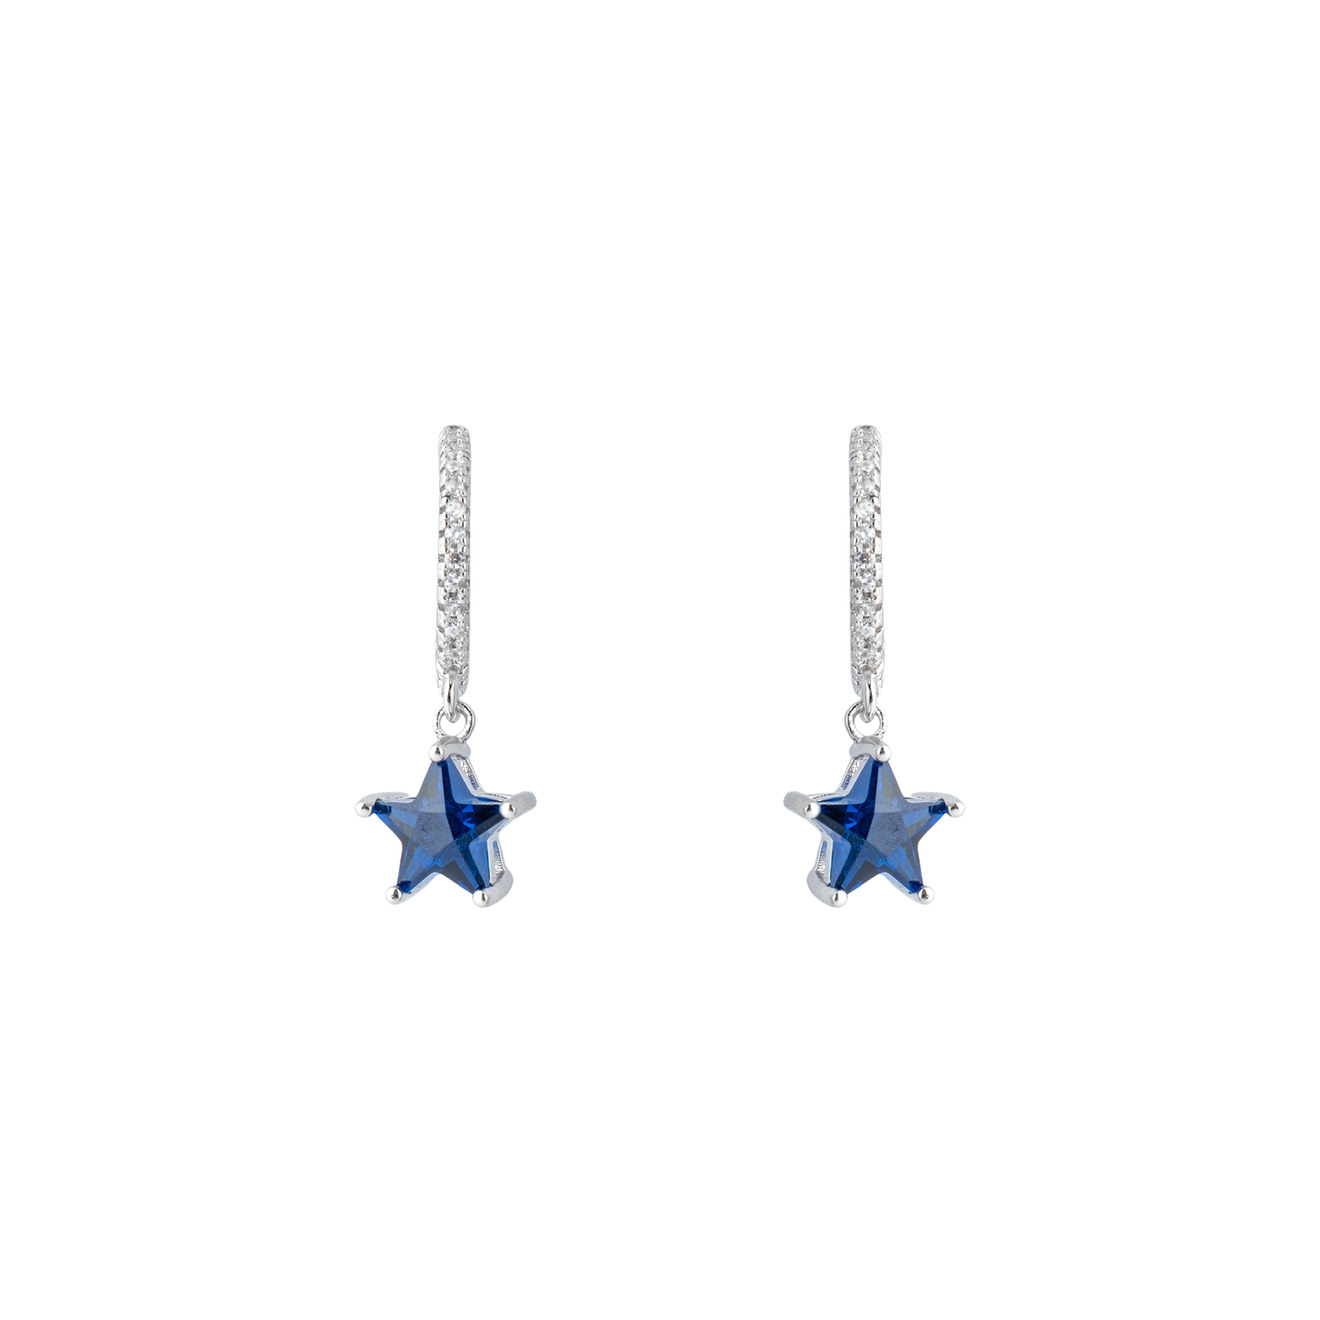 SKYE Серебряные серьги с синими кристаллами-звездами skye серебряные серьги джеккеты созвездия